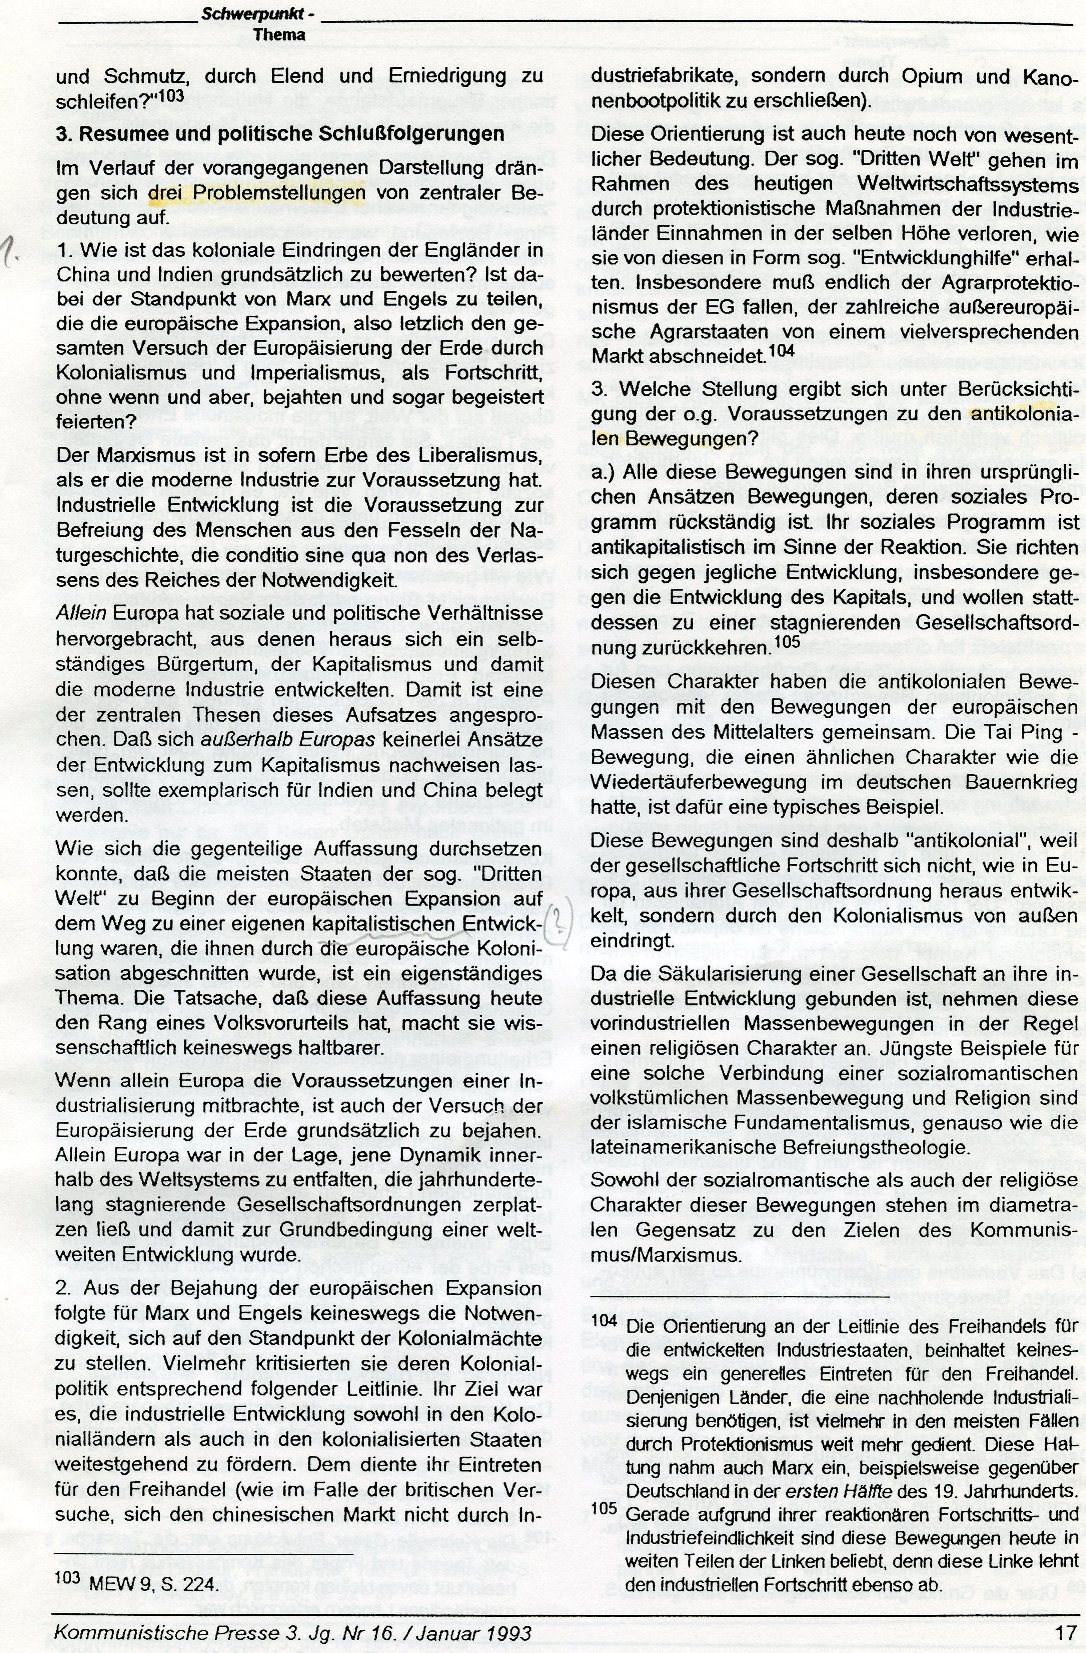 Gelsenkirchen_Kommunistische_Presse_1993_16_Beilage_017